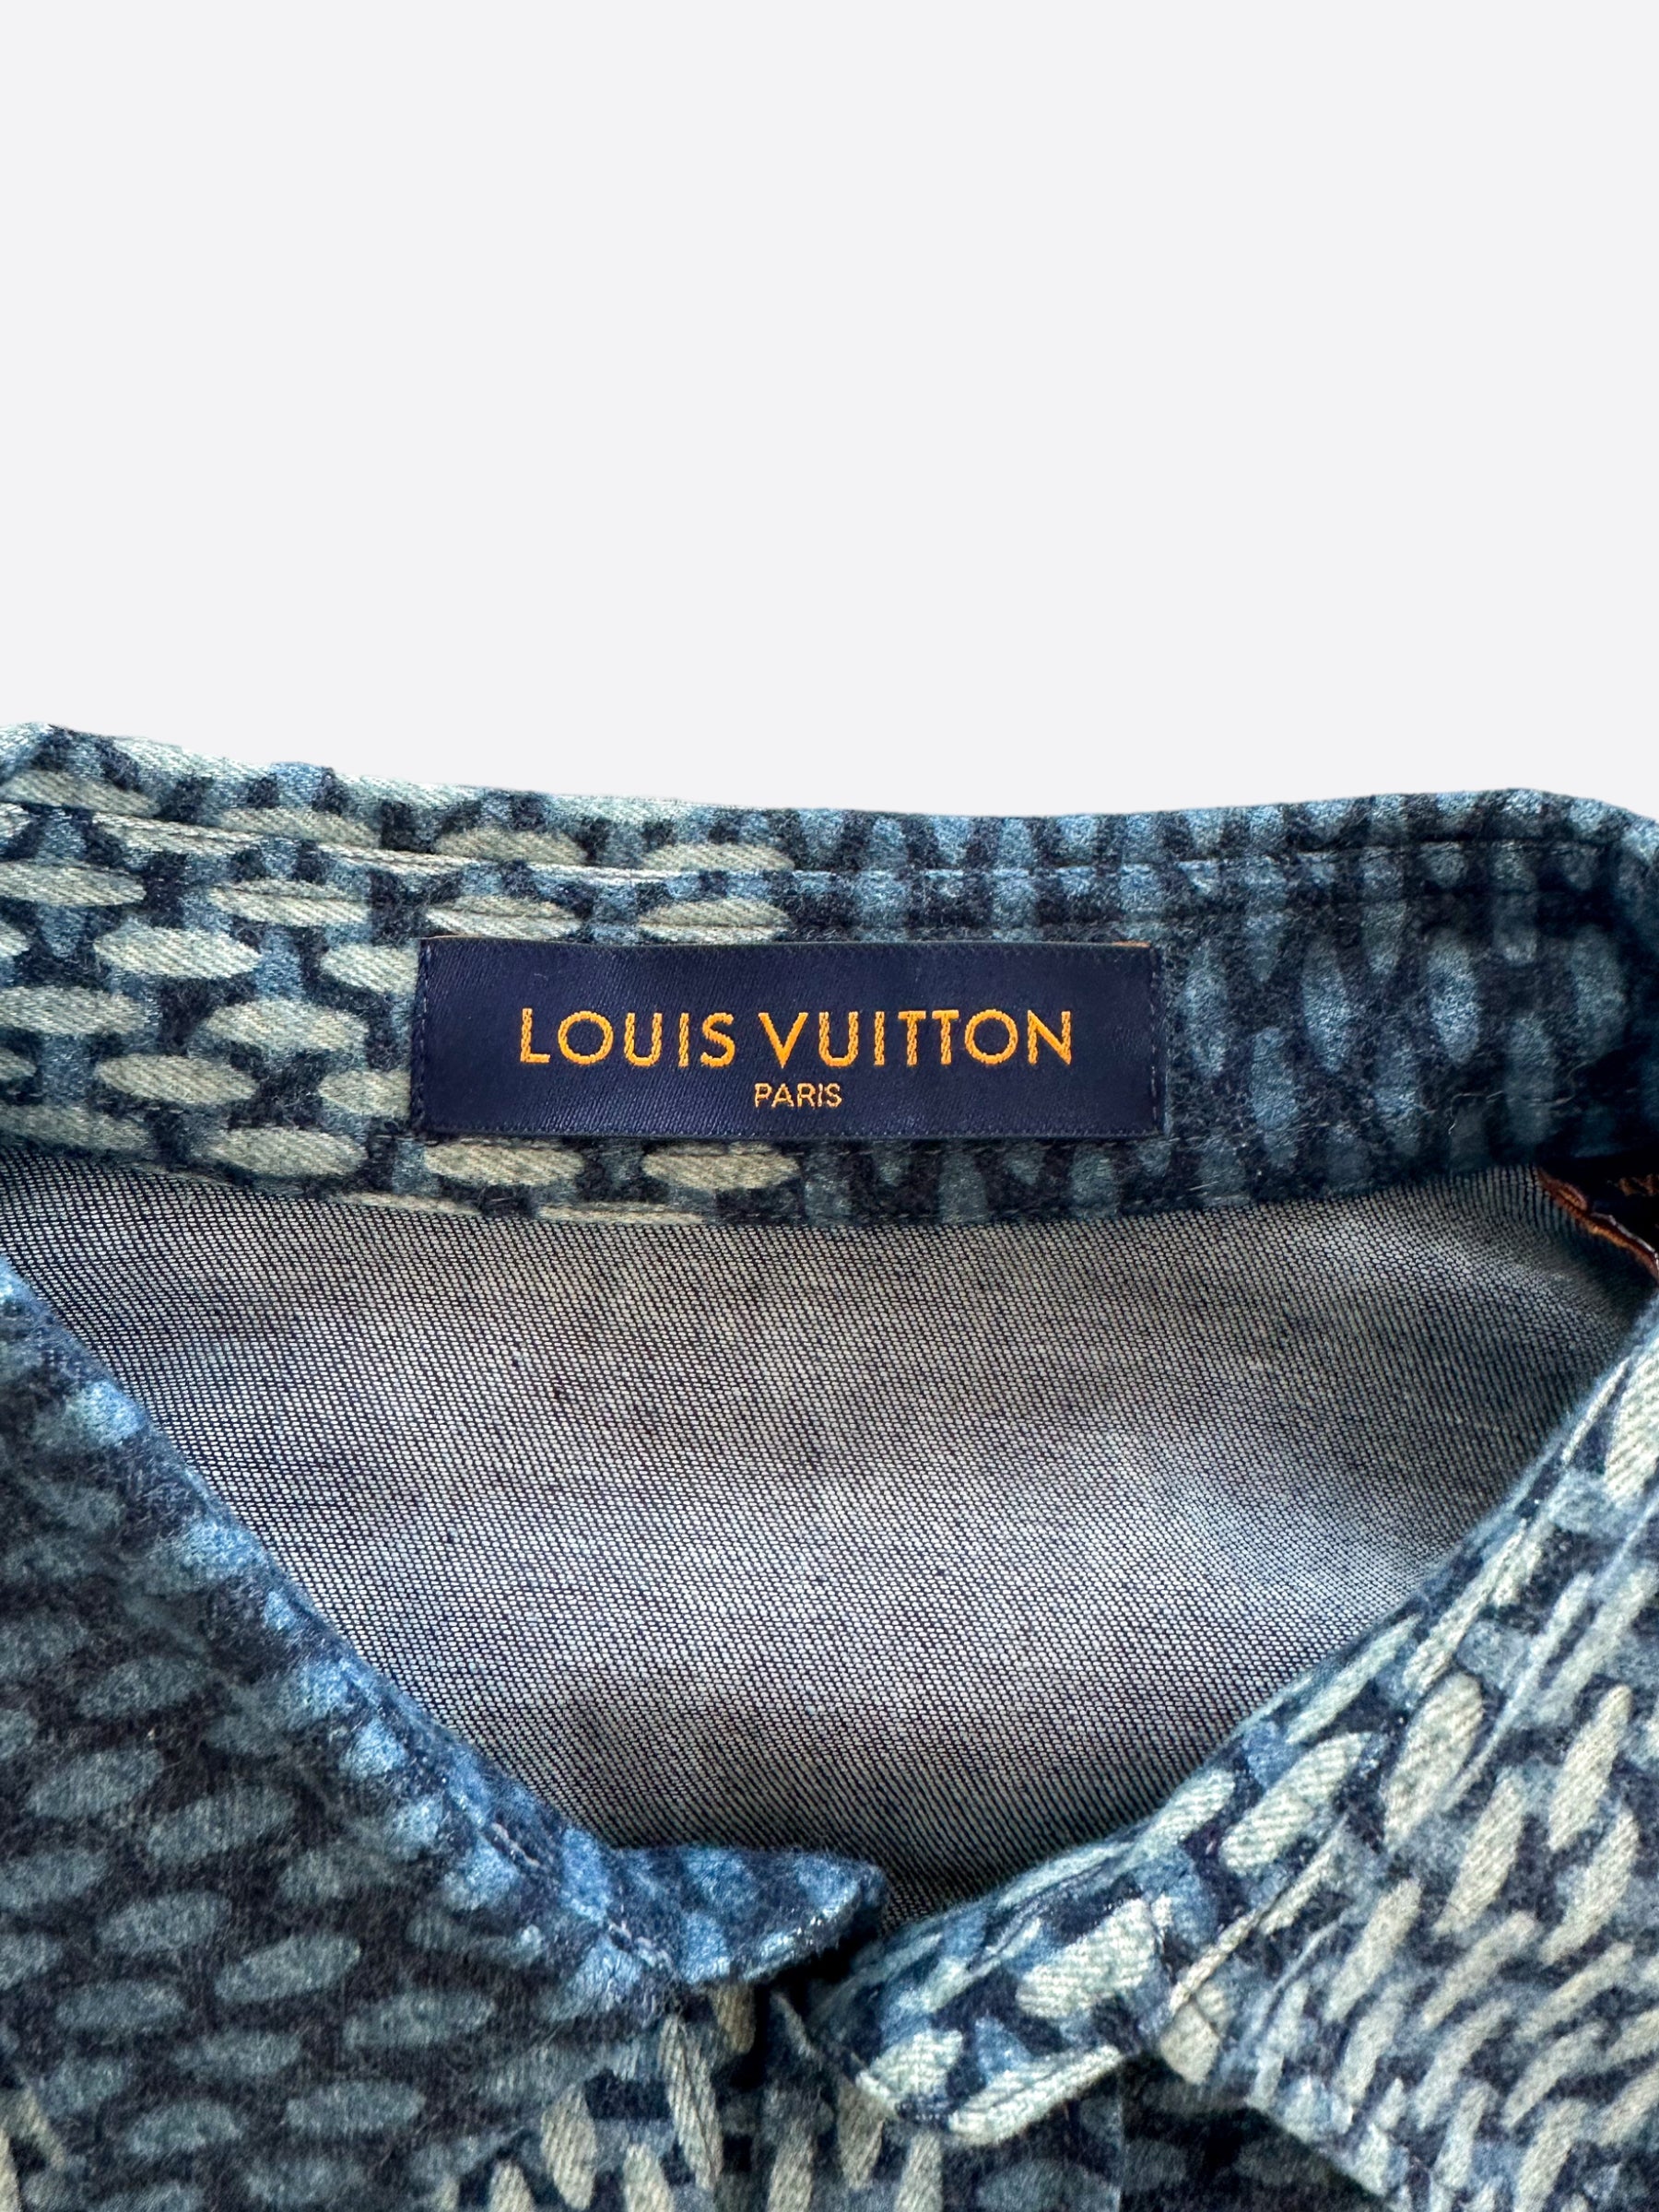 Louis Vuitton Giant Damier Monogram Waves Flannel Shirt VCCM07 Sz - S -  170/84A